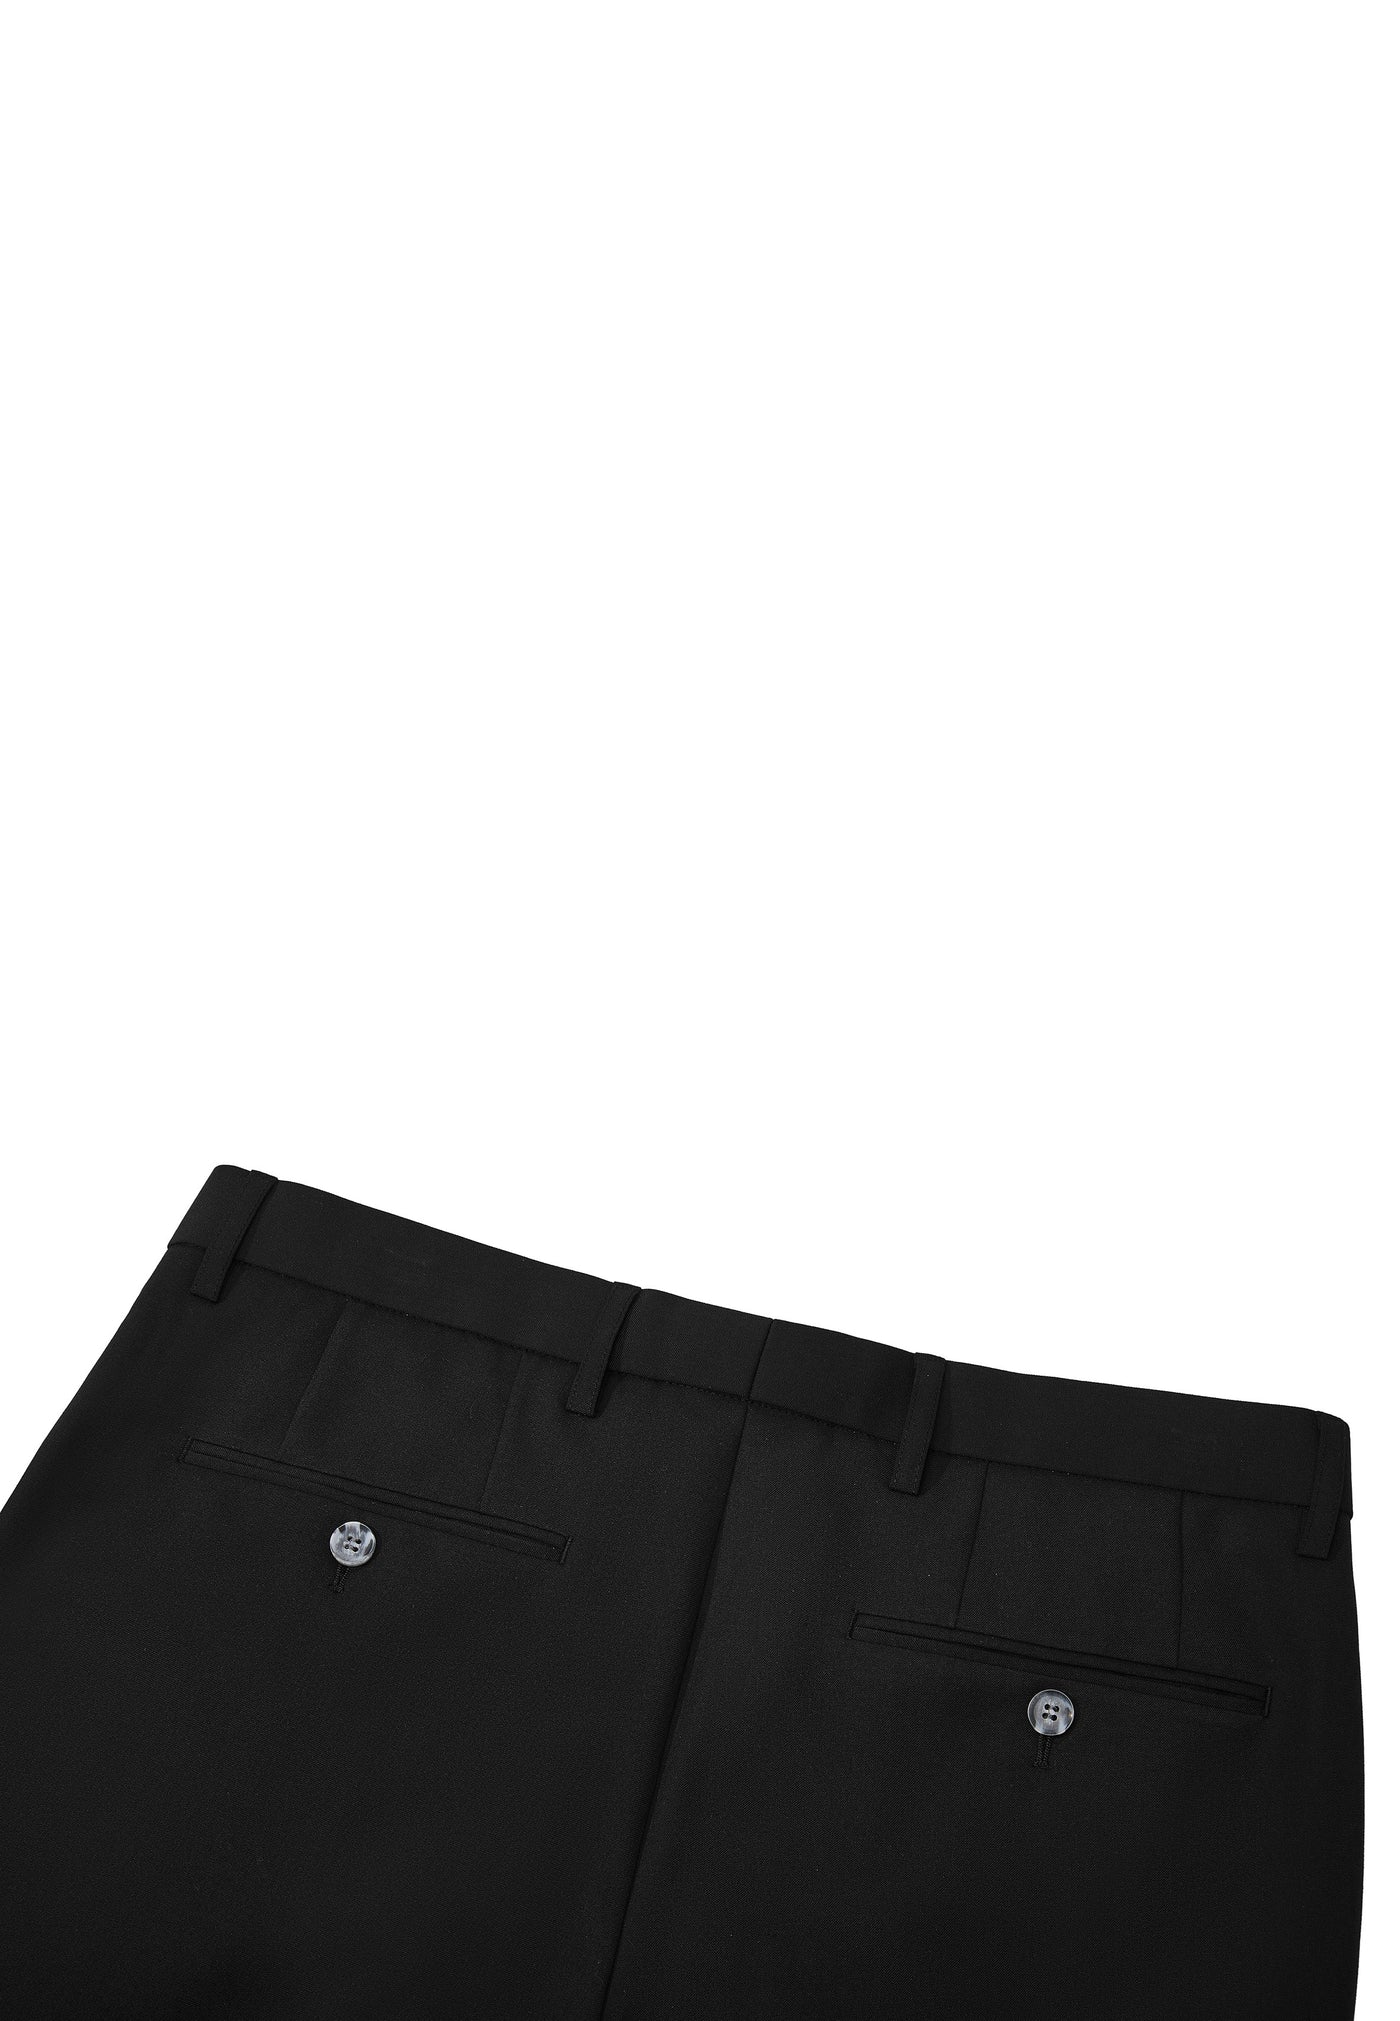 Men Clothing 3M Super Soft Modal Multi-Way Stretch Suit Pants Smart Fit